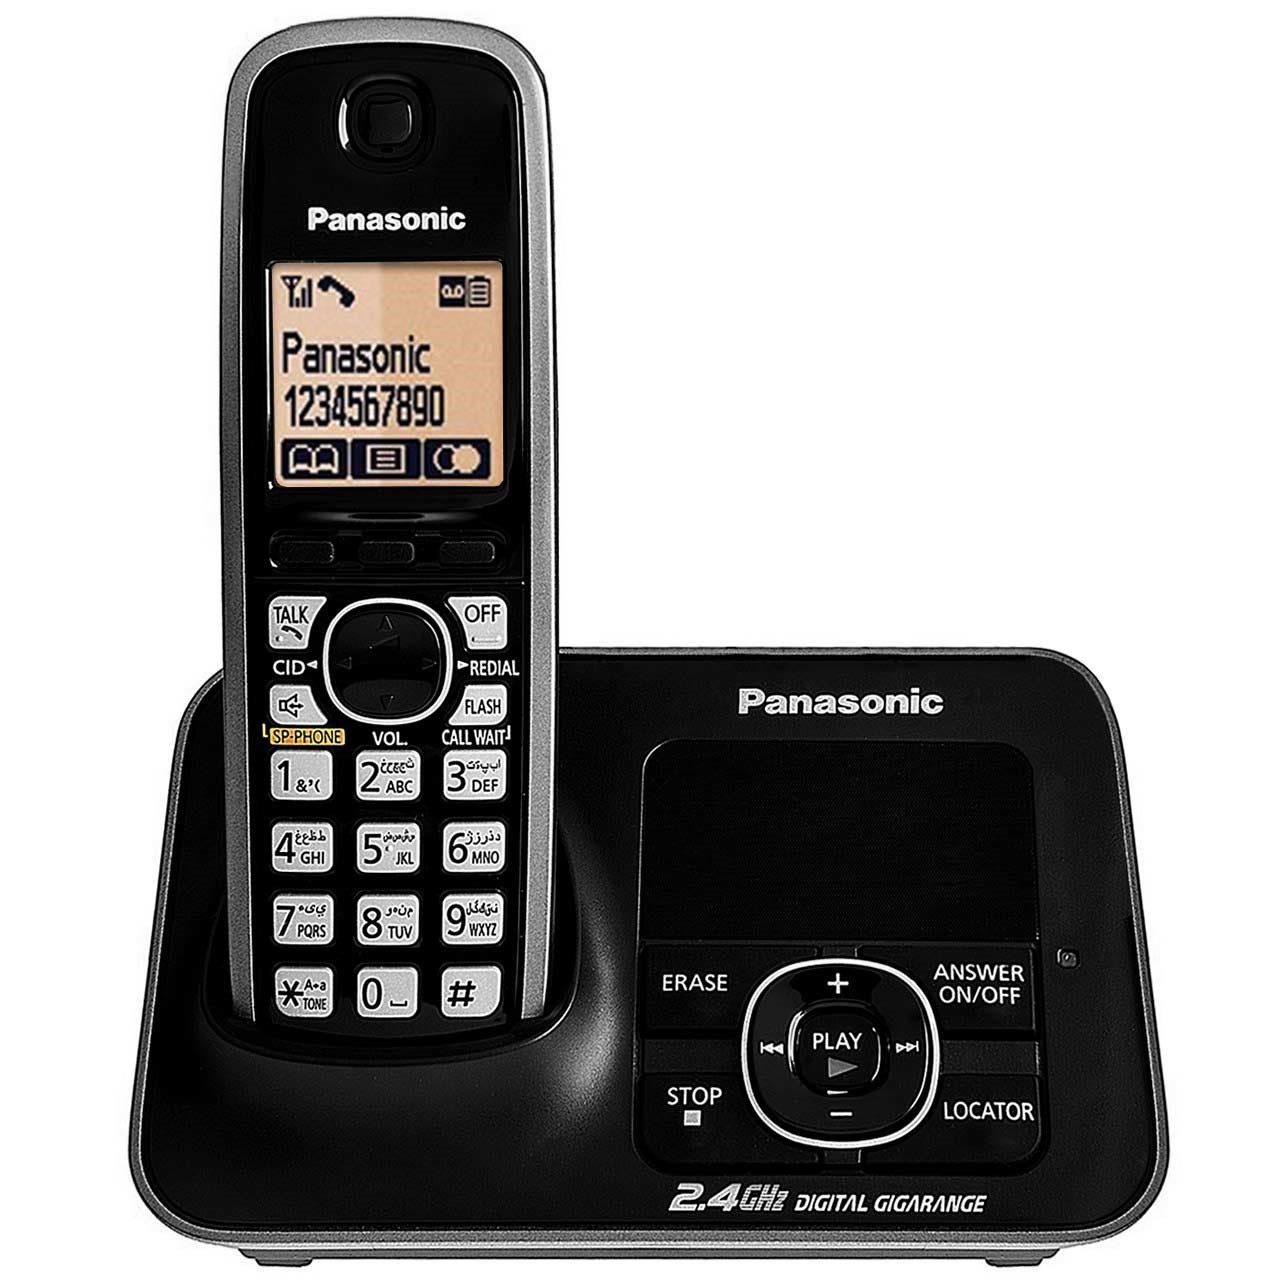 آنباکس تلفن بی سیم پاناسونیک مدل KX-TG3721 توسط محمود احمدزاده سرستی در تاریخ ۱۸ تیر ۱۴۰۰